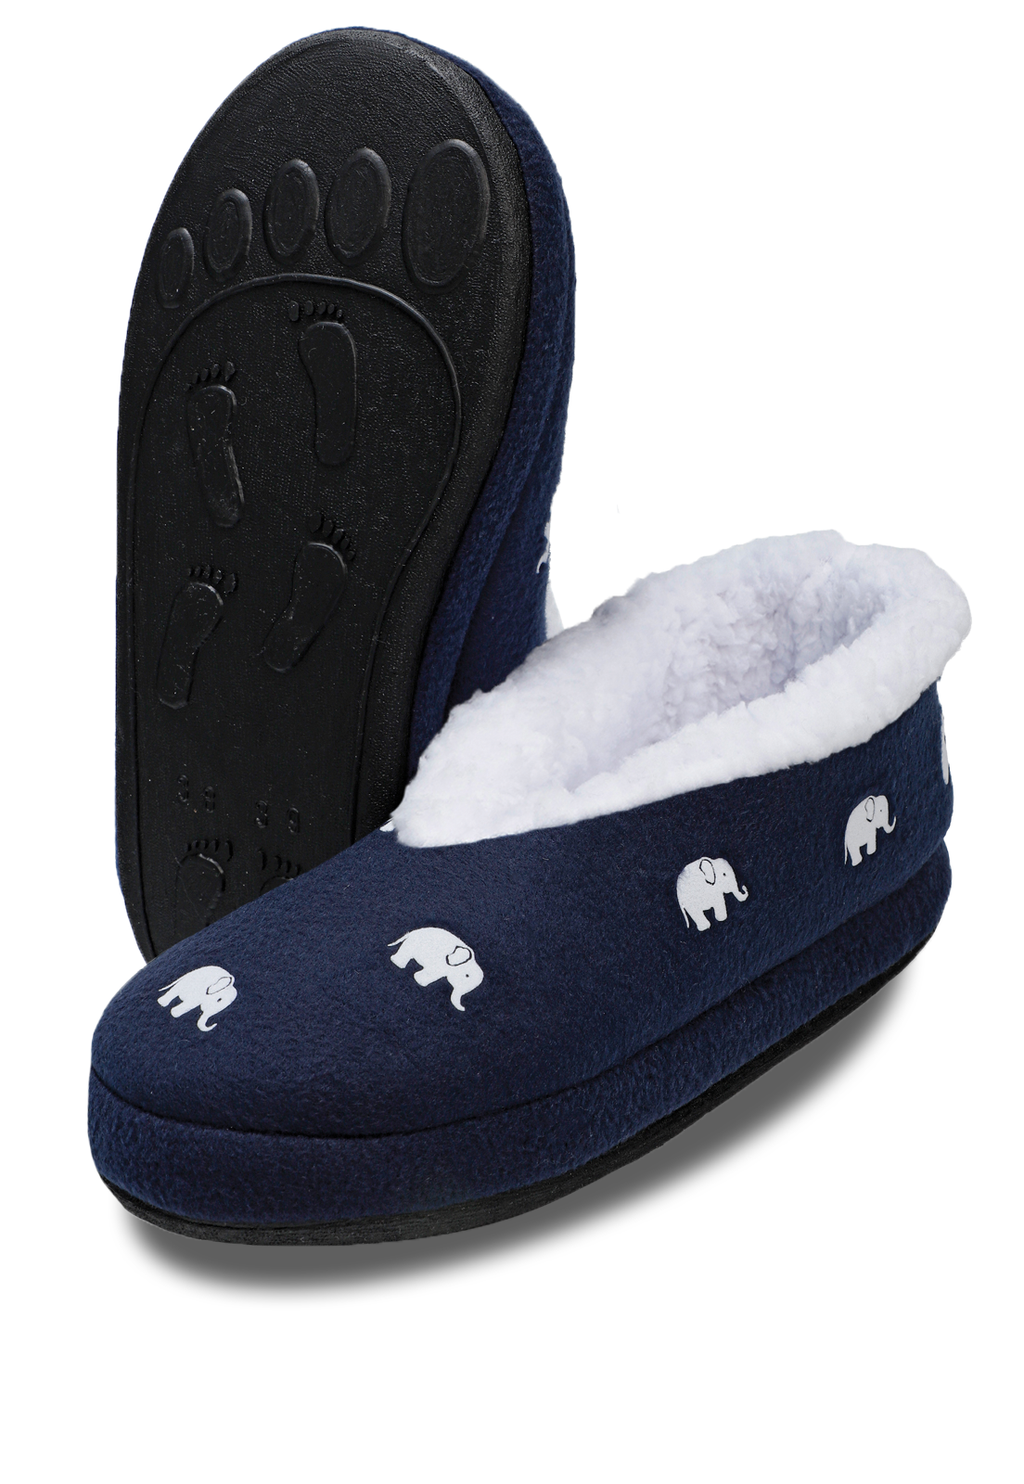 pantuflas azules con lindos elefantes blancos estampados